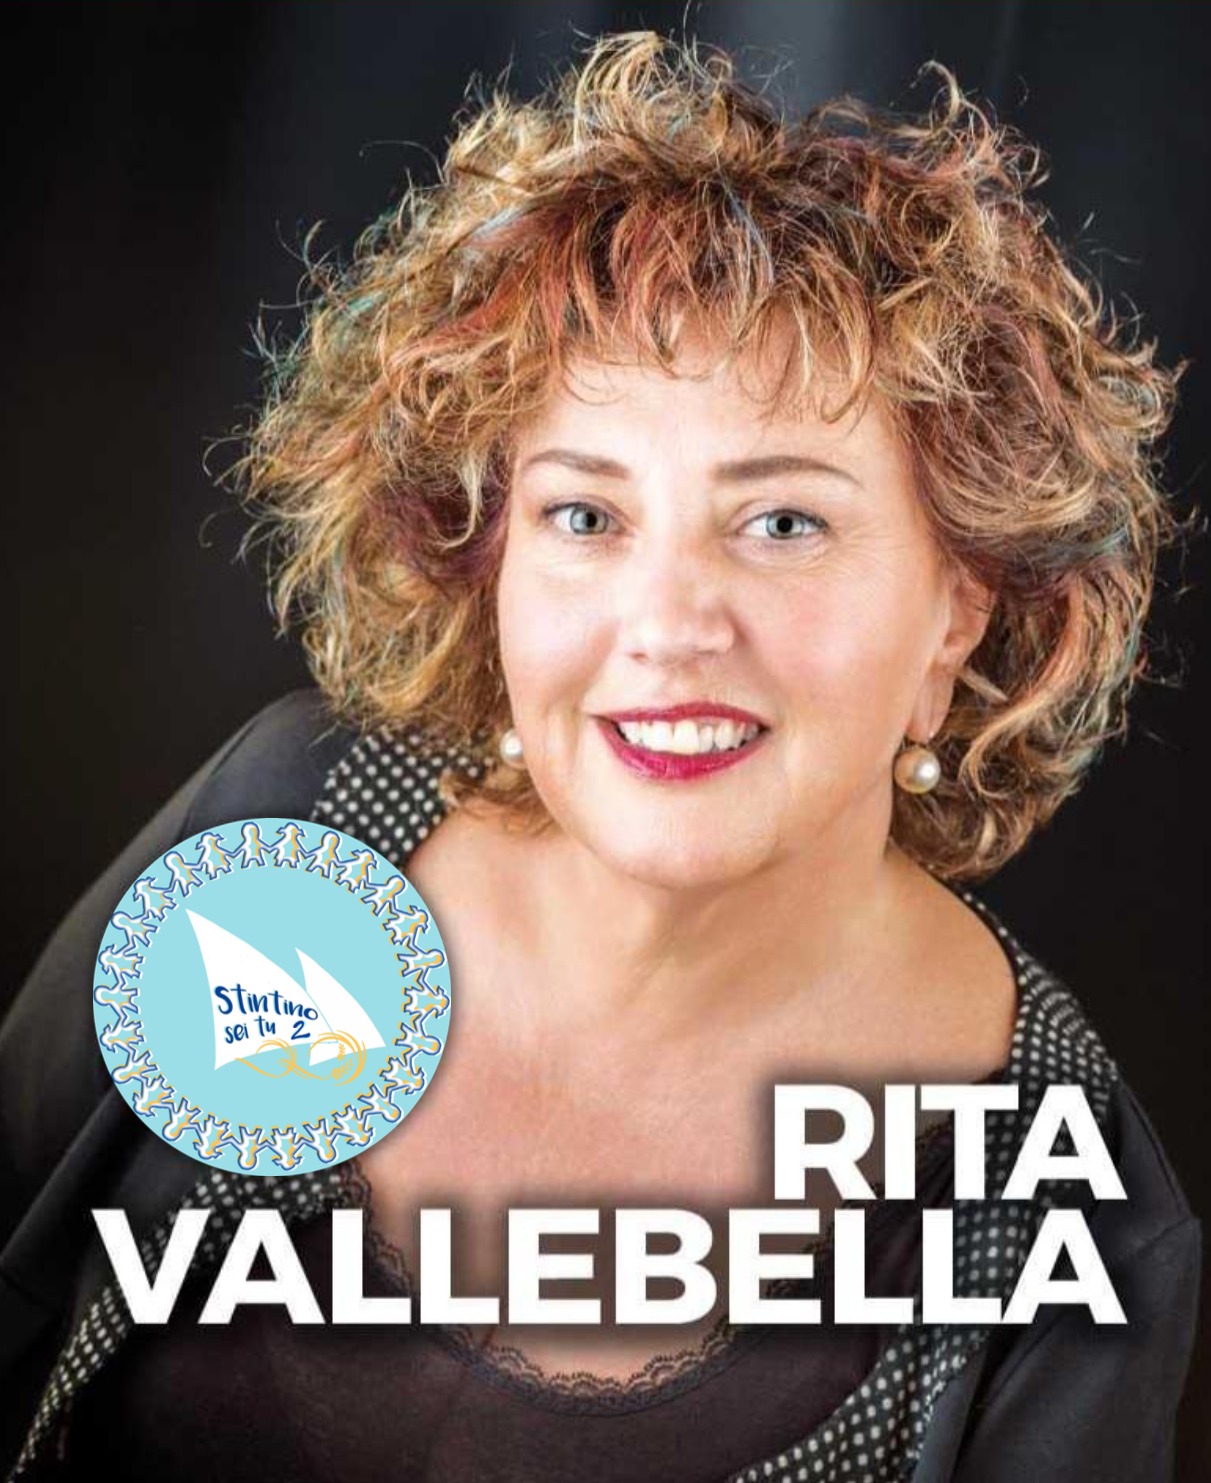 Rita Limbania Vallebella